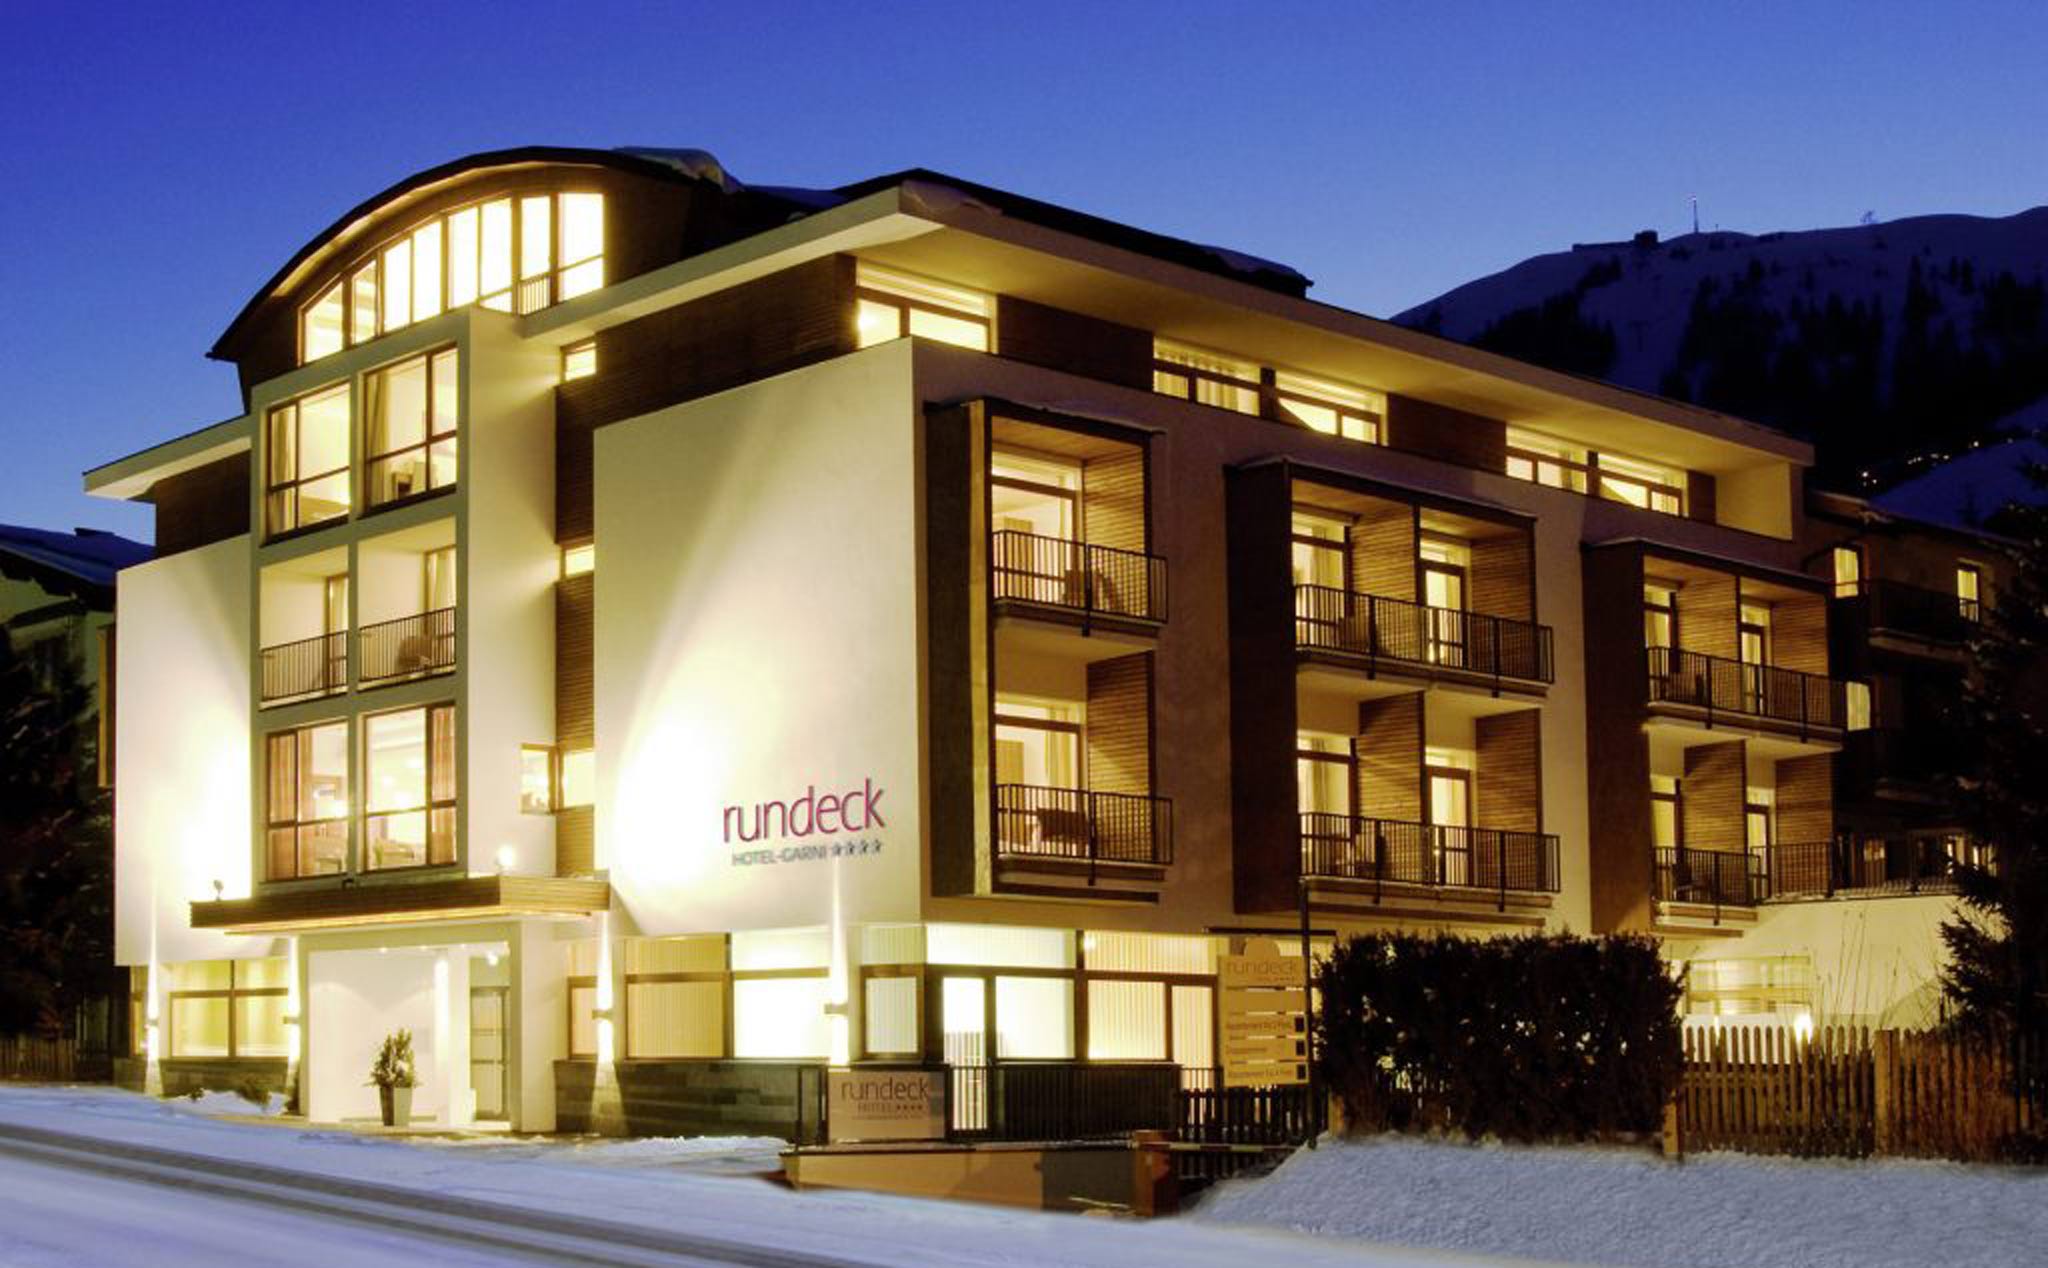 Architektur Fotografie | Außenansicht Winter Hotel Rundeck, St. Anton am Arlberg